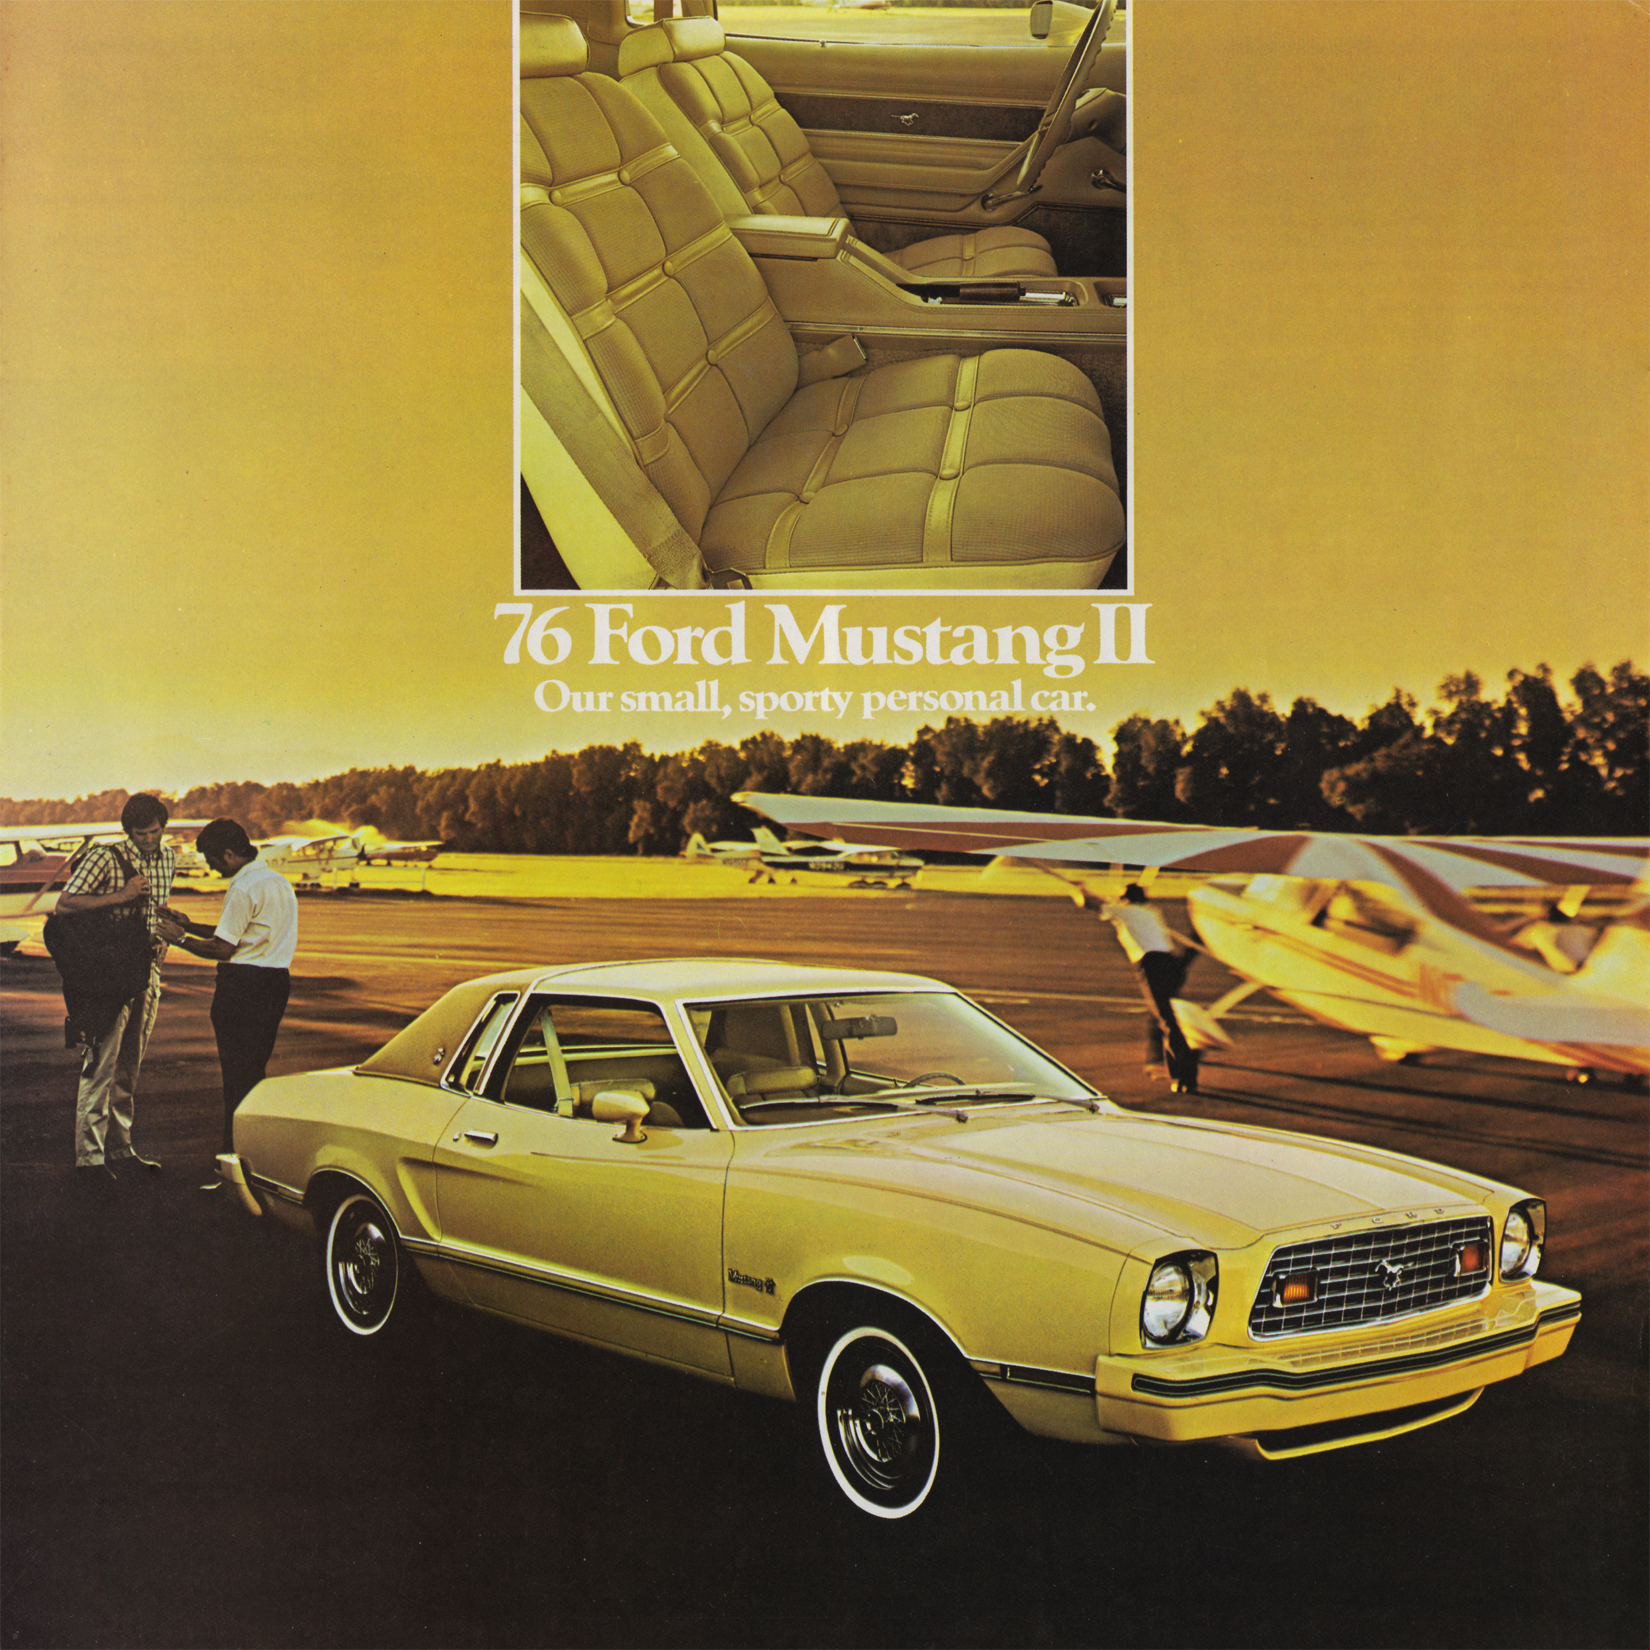 1976 Ford Mustang II Brochure